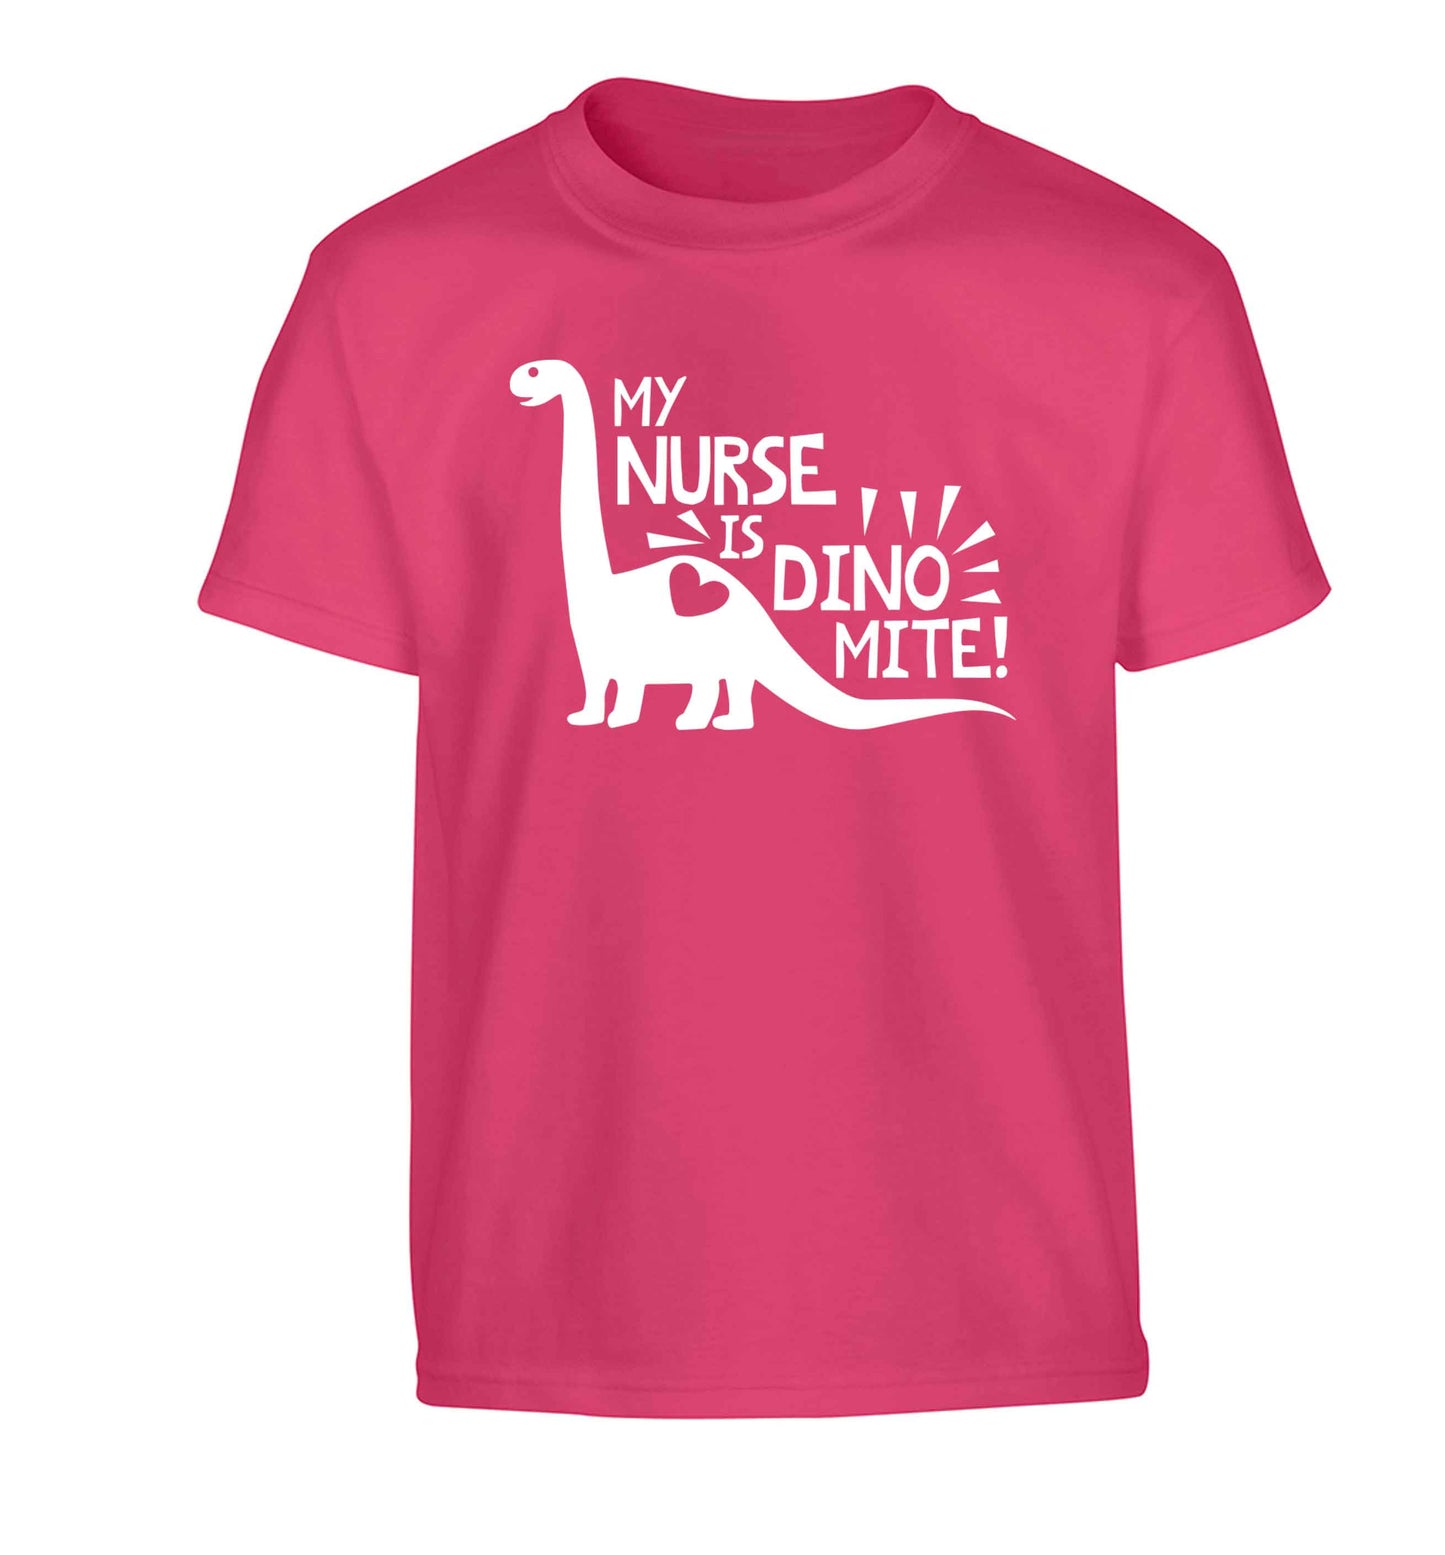 My nurse is dinomite! Children's pink Tshirt 12-13 Years